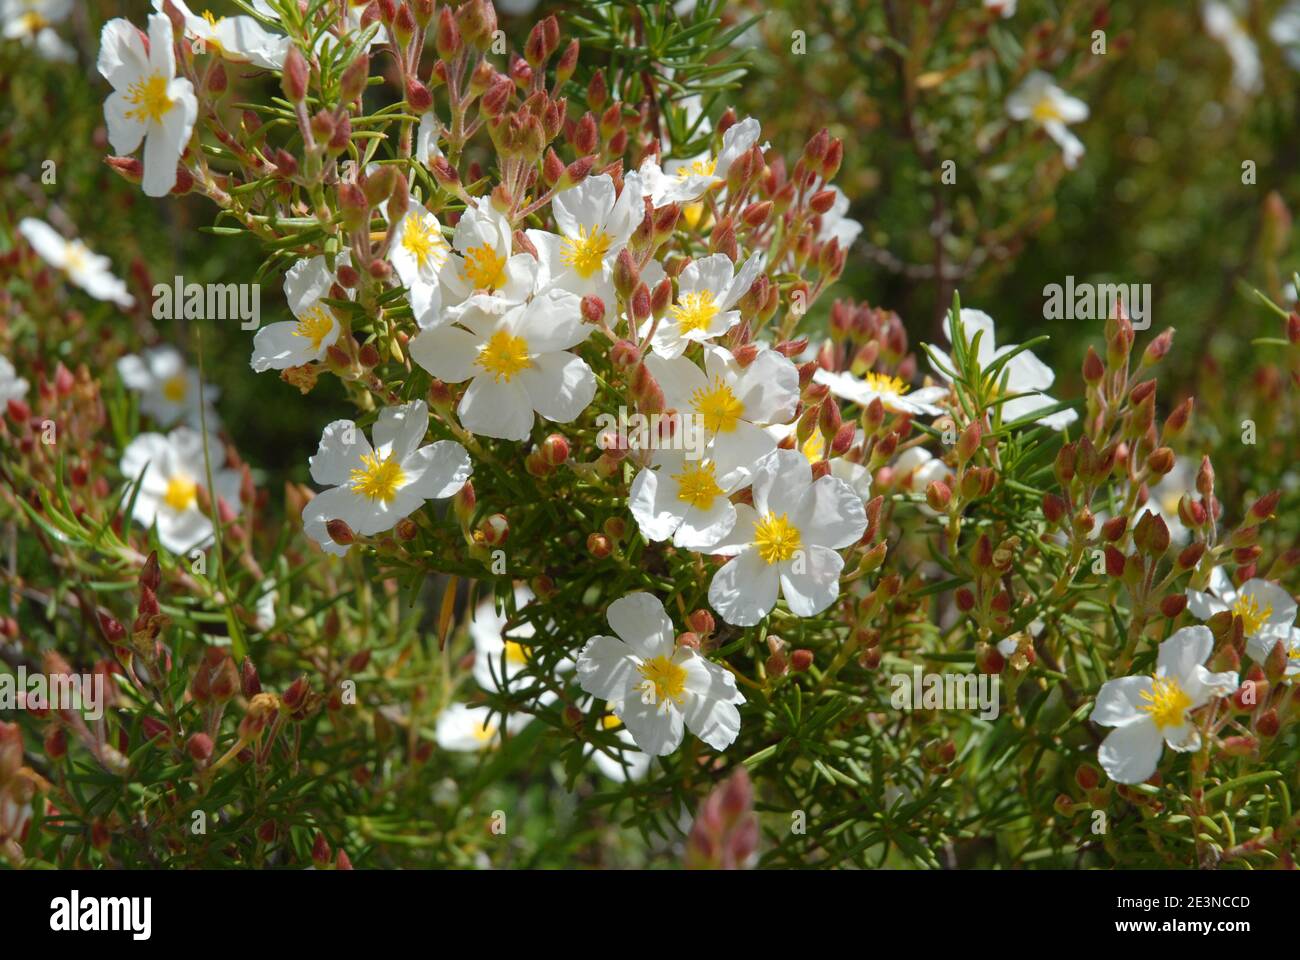 Des fleurs blanches délicates de cistus à feuilles étroites, également connues sous le nom de Cistus monspeliensis, poussent sauvages en Espagne Banque D'Images